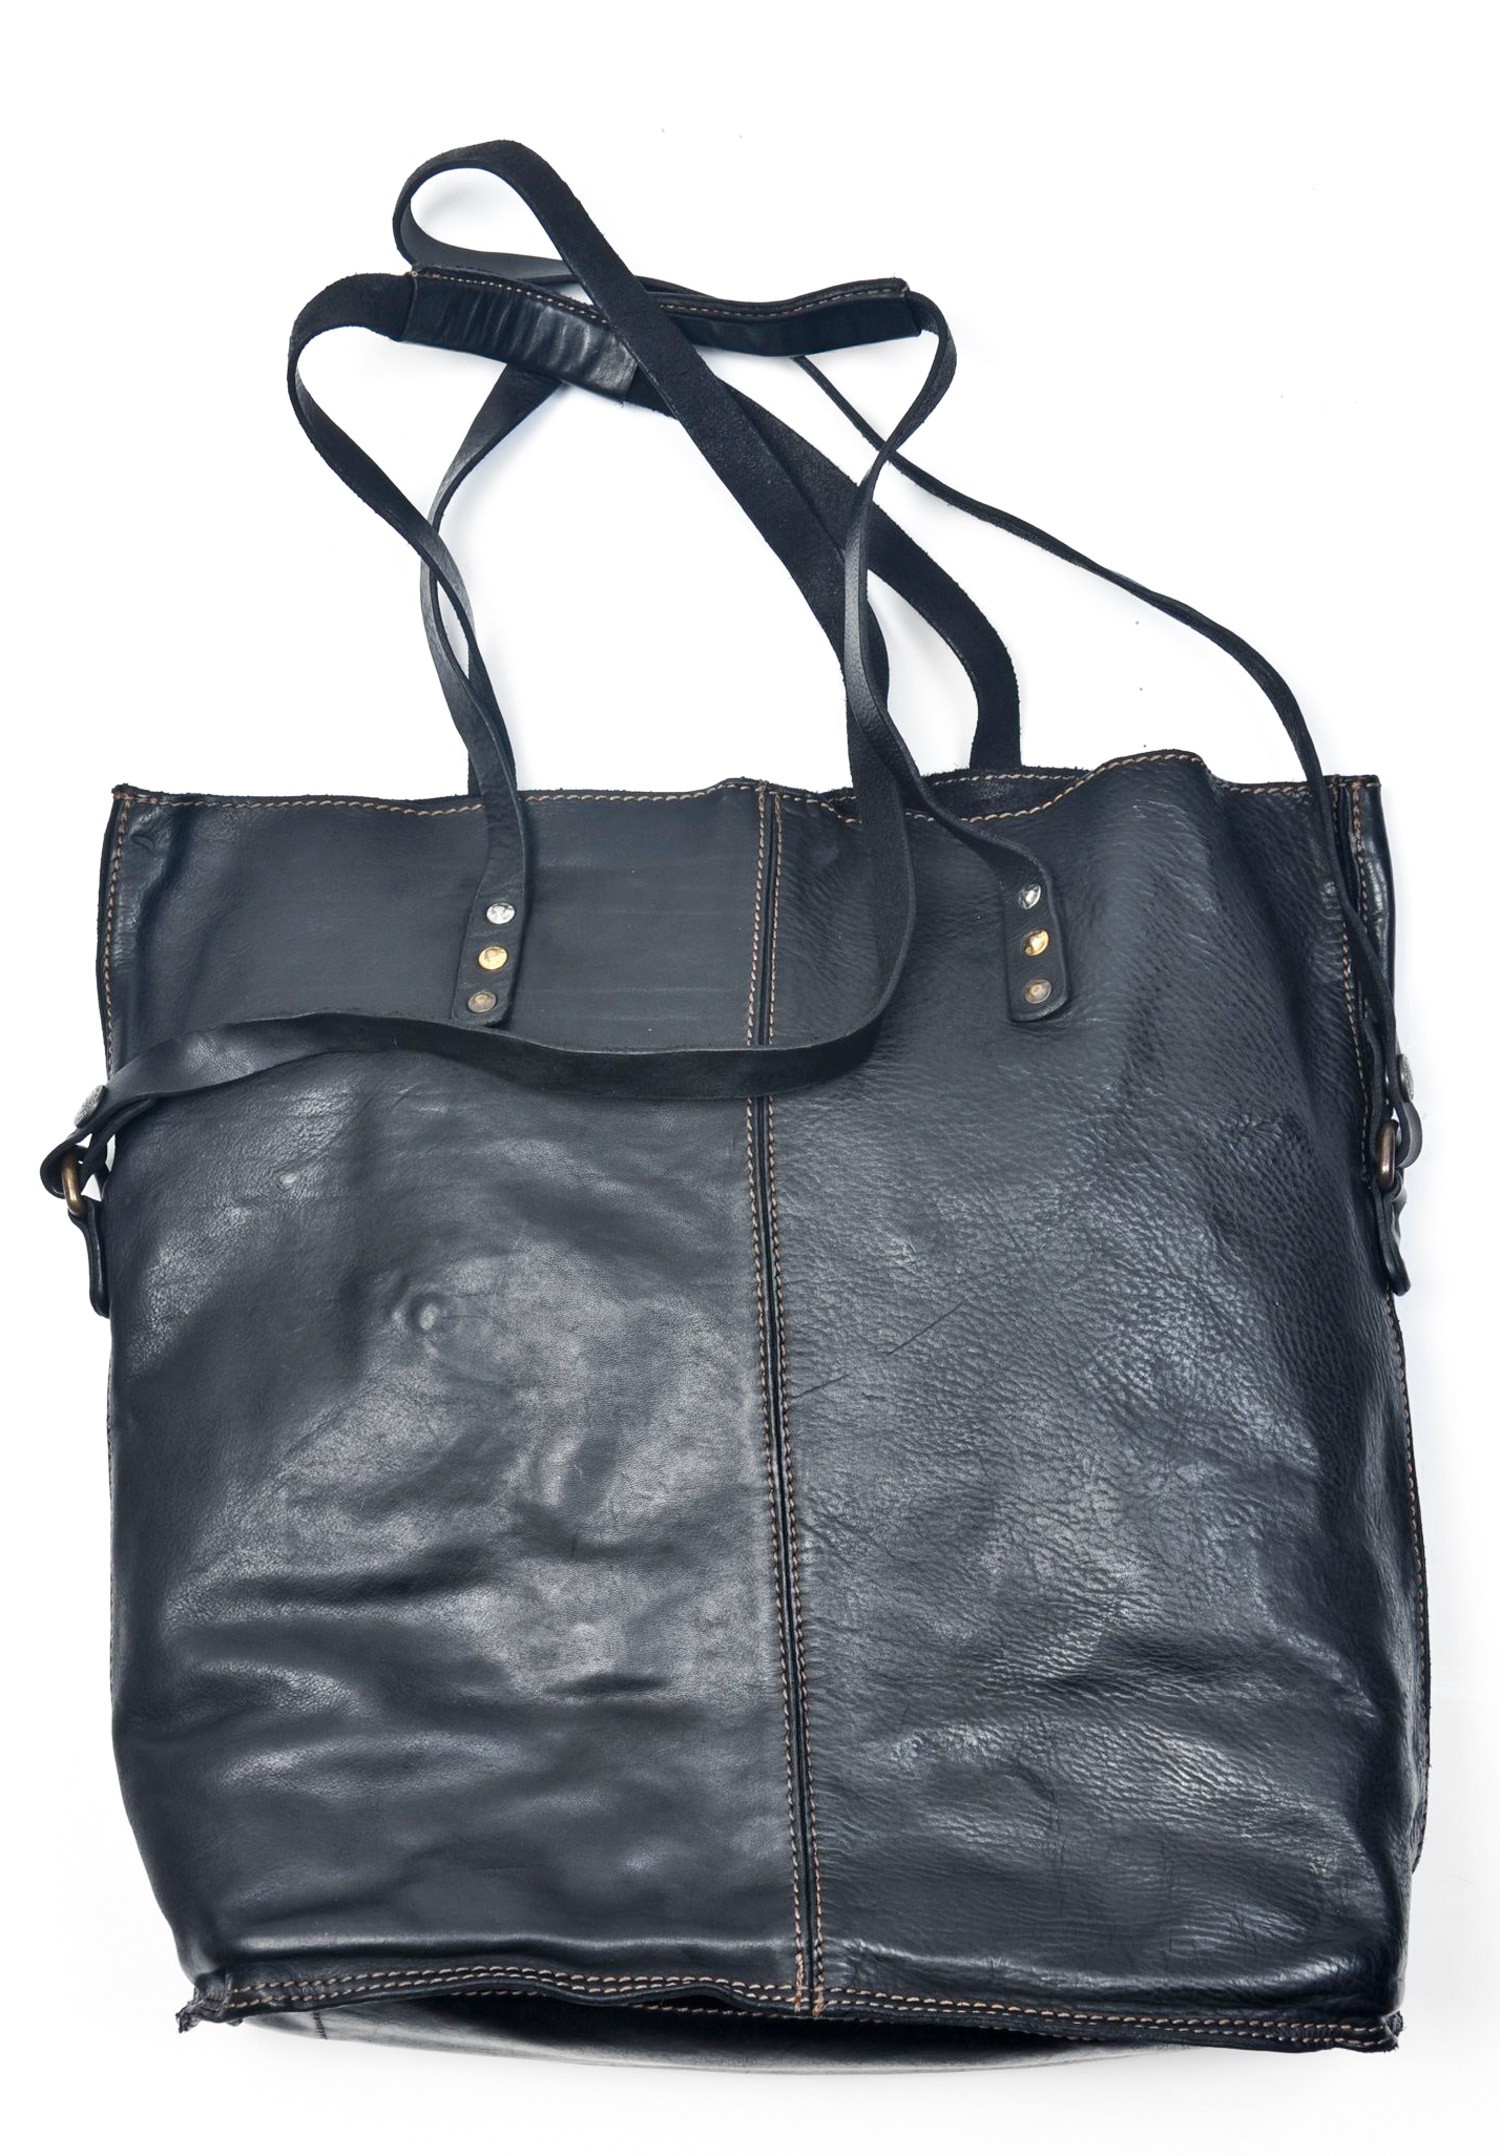 Campomaggi Unica Tote Bag in Black | Santa Fe Dry Goods . Workshop ...